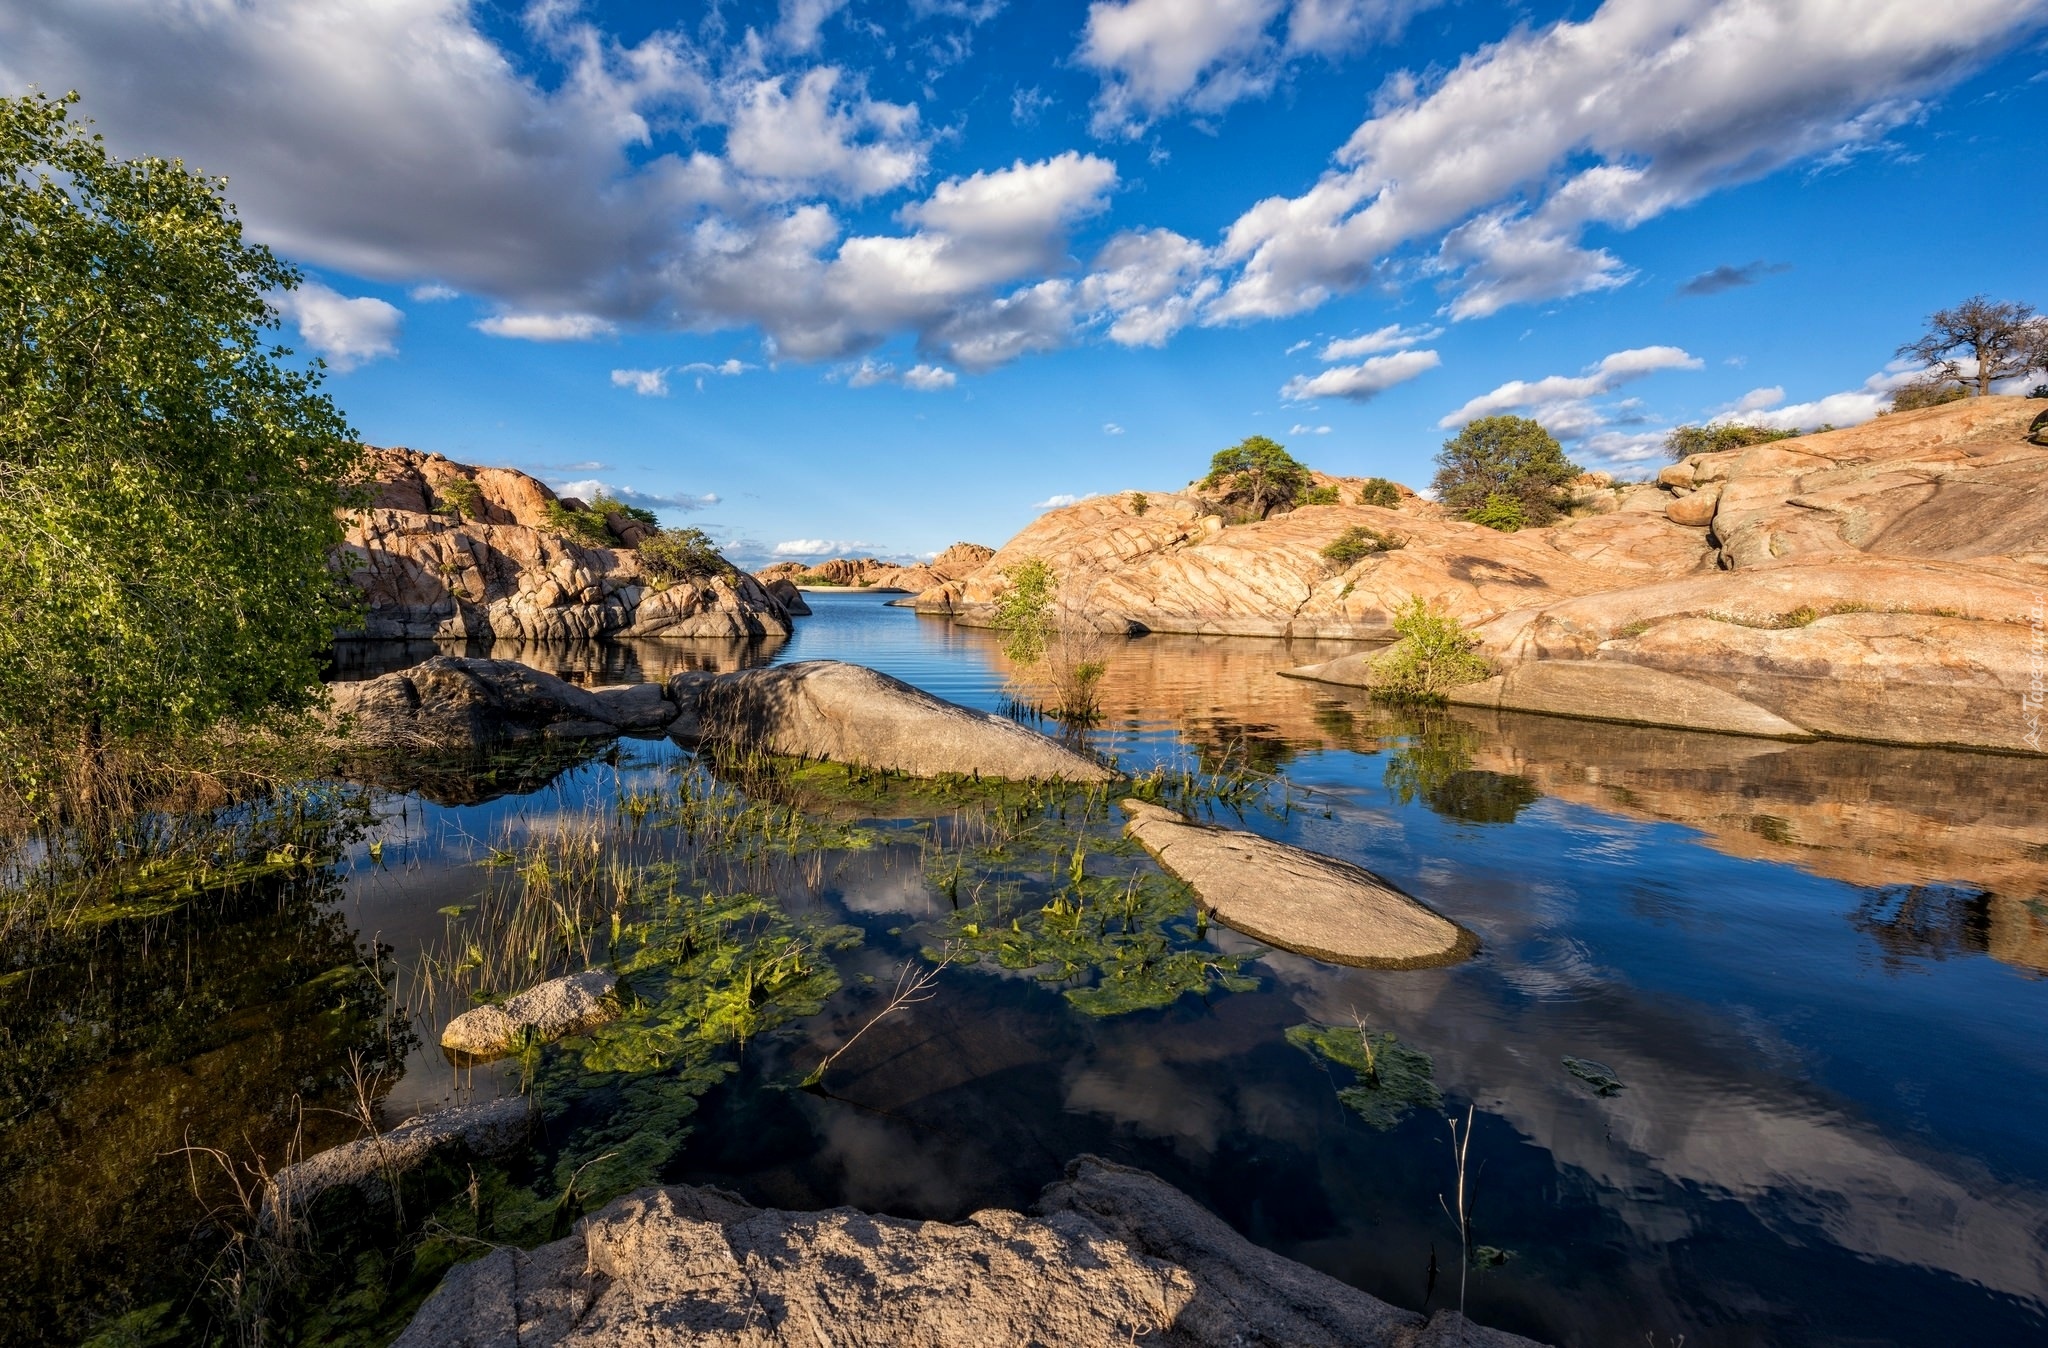 Stany Zjednoczone, Stan Arizona, Formacje skalne Granit Dells, Jezioro Willow Lake, Góry, Skały, Rzeka, Rośliny